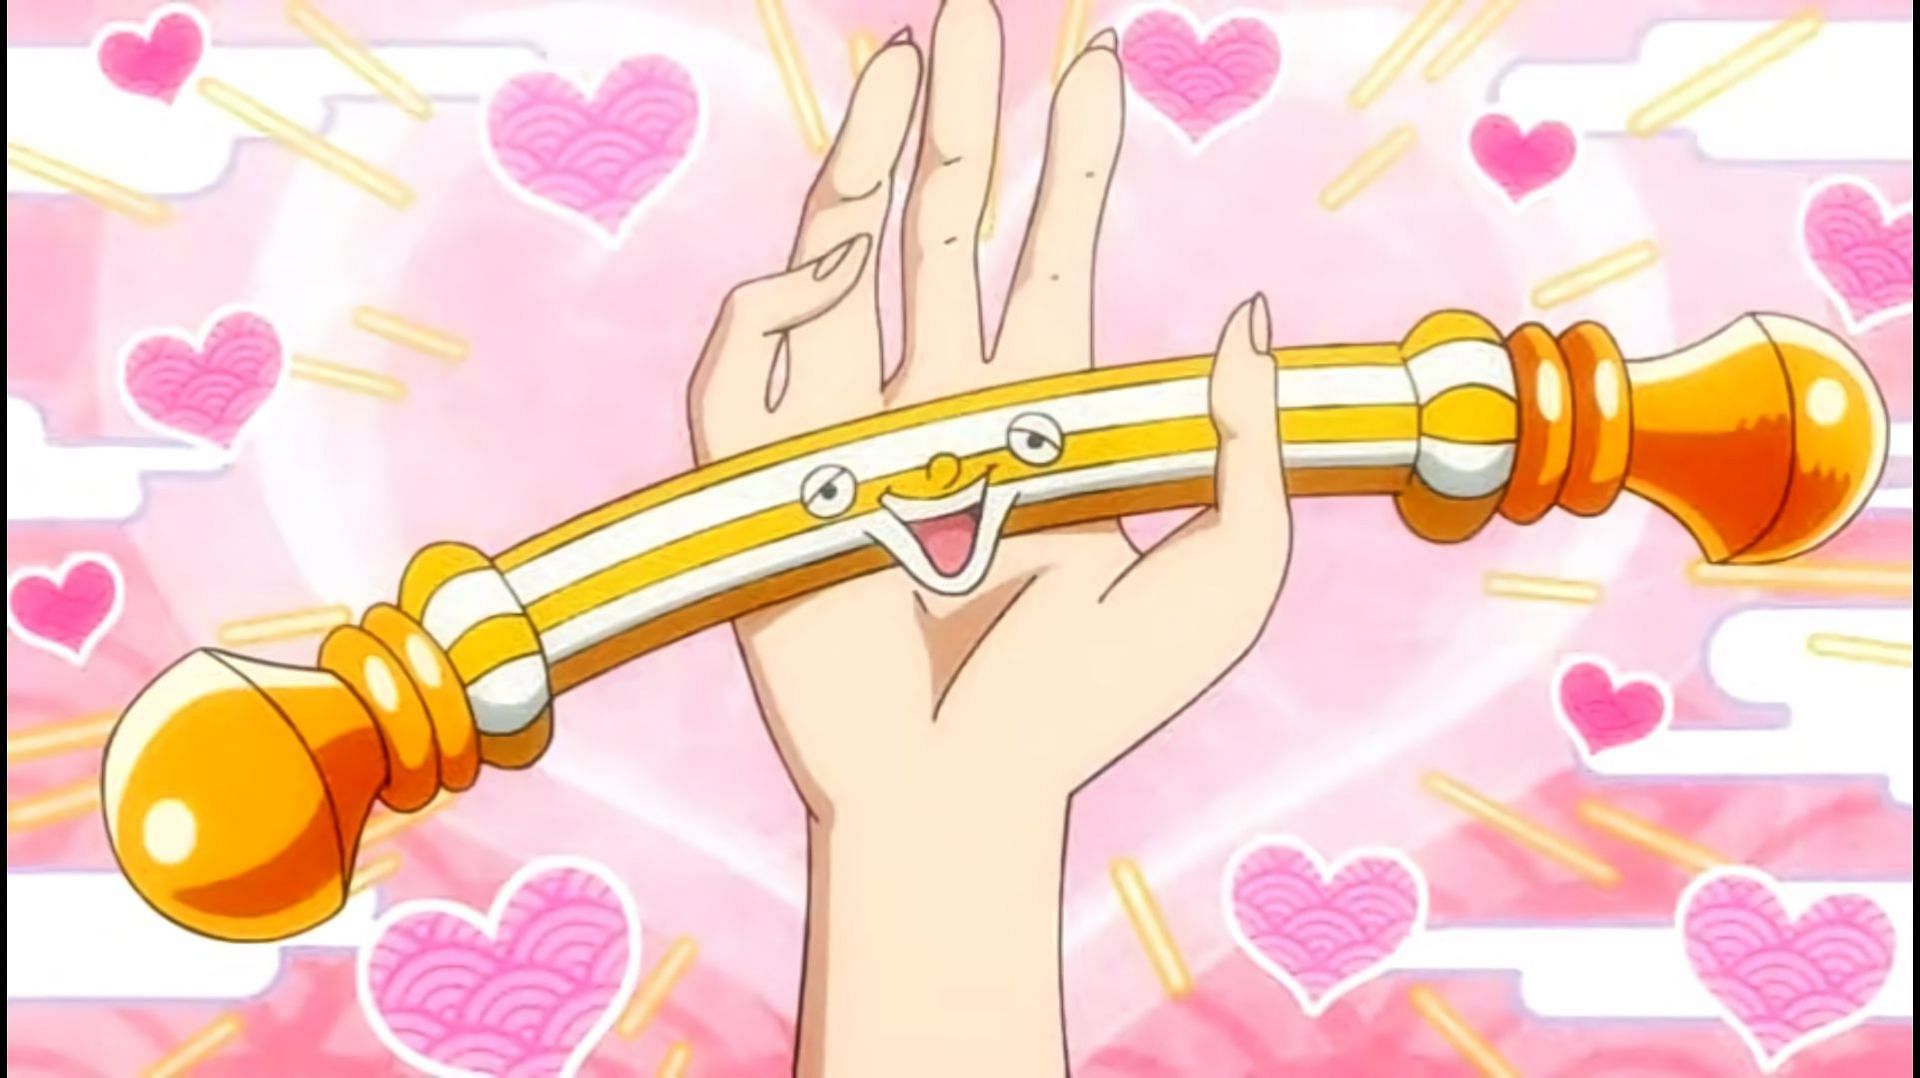 Nami&#039;s baton in One Piece episode 1037 (Image via Toei Animation)